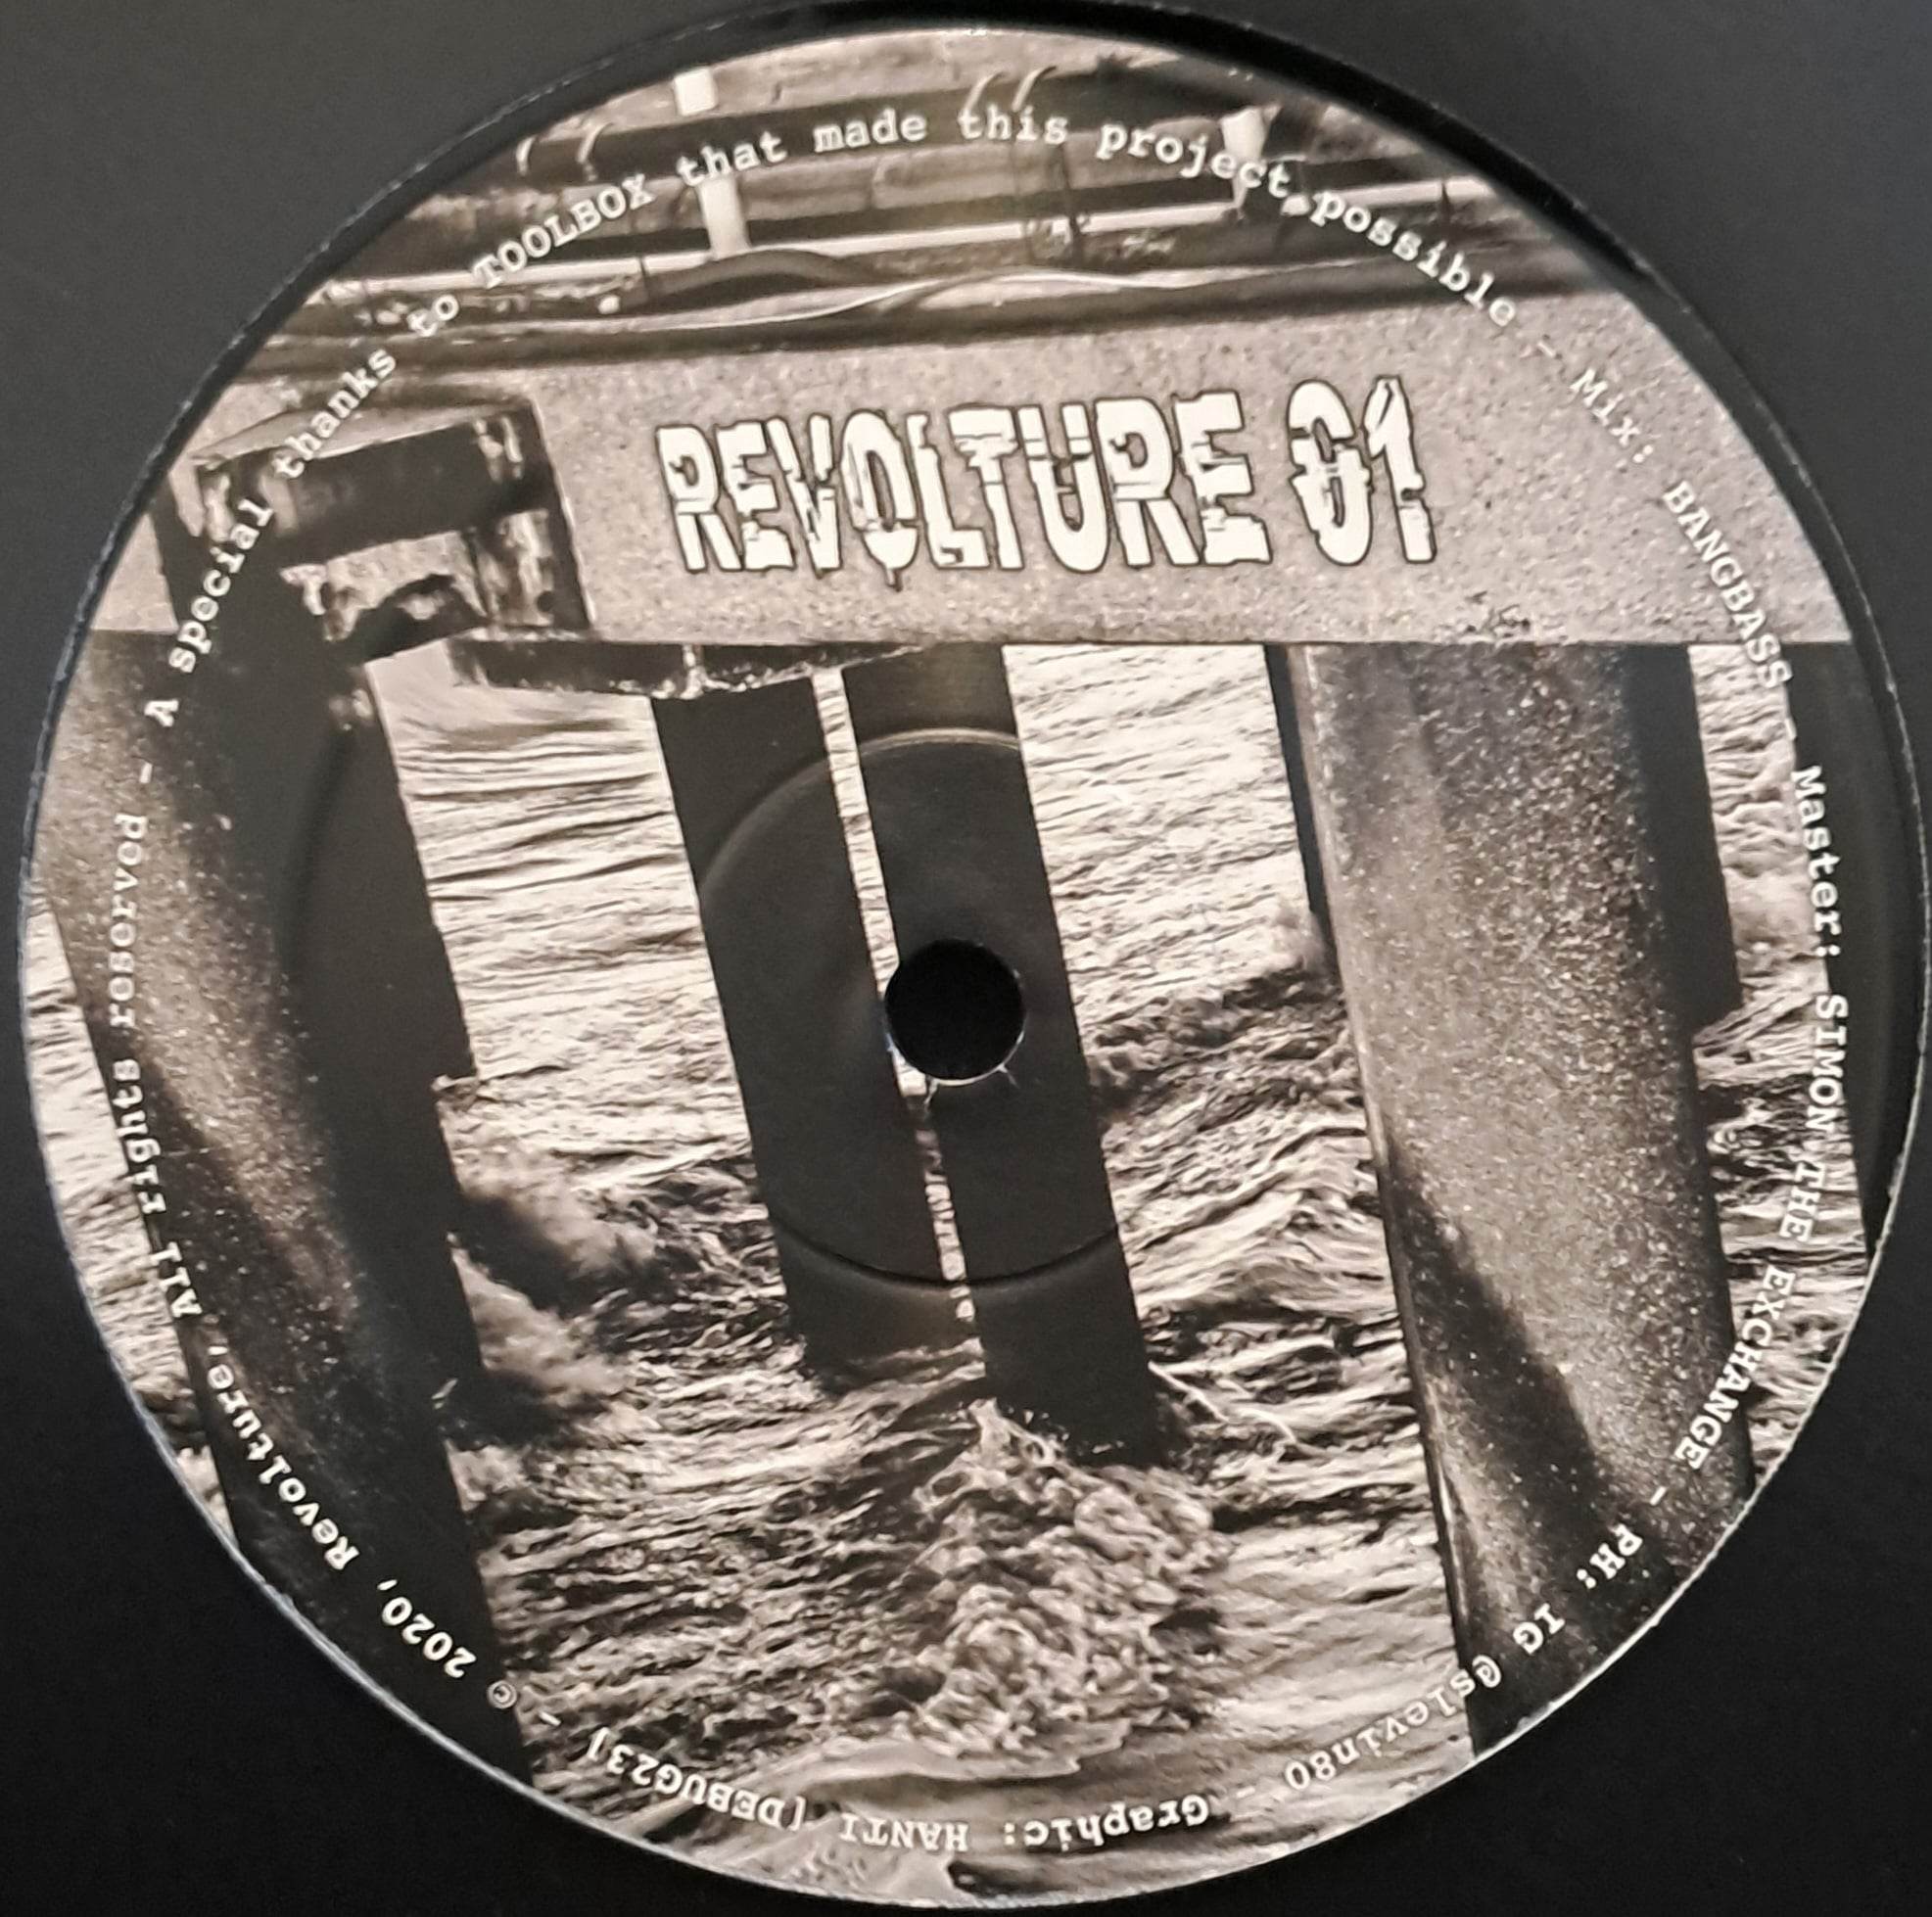 Revolture 01 (toute dernière copie en stock) - vinyle acidcore